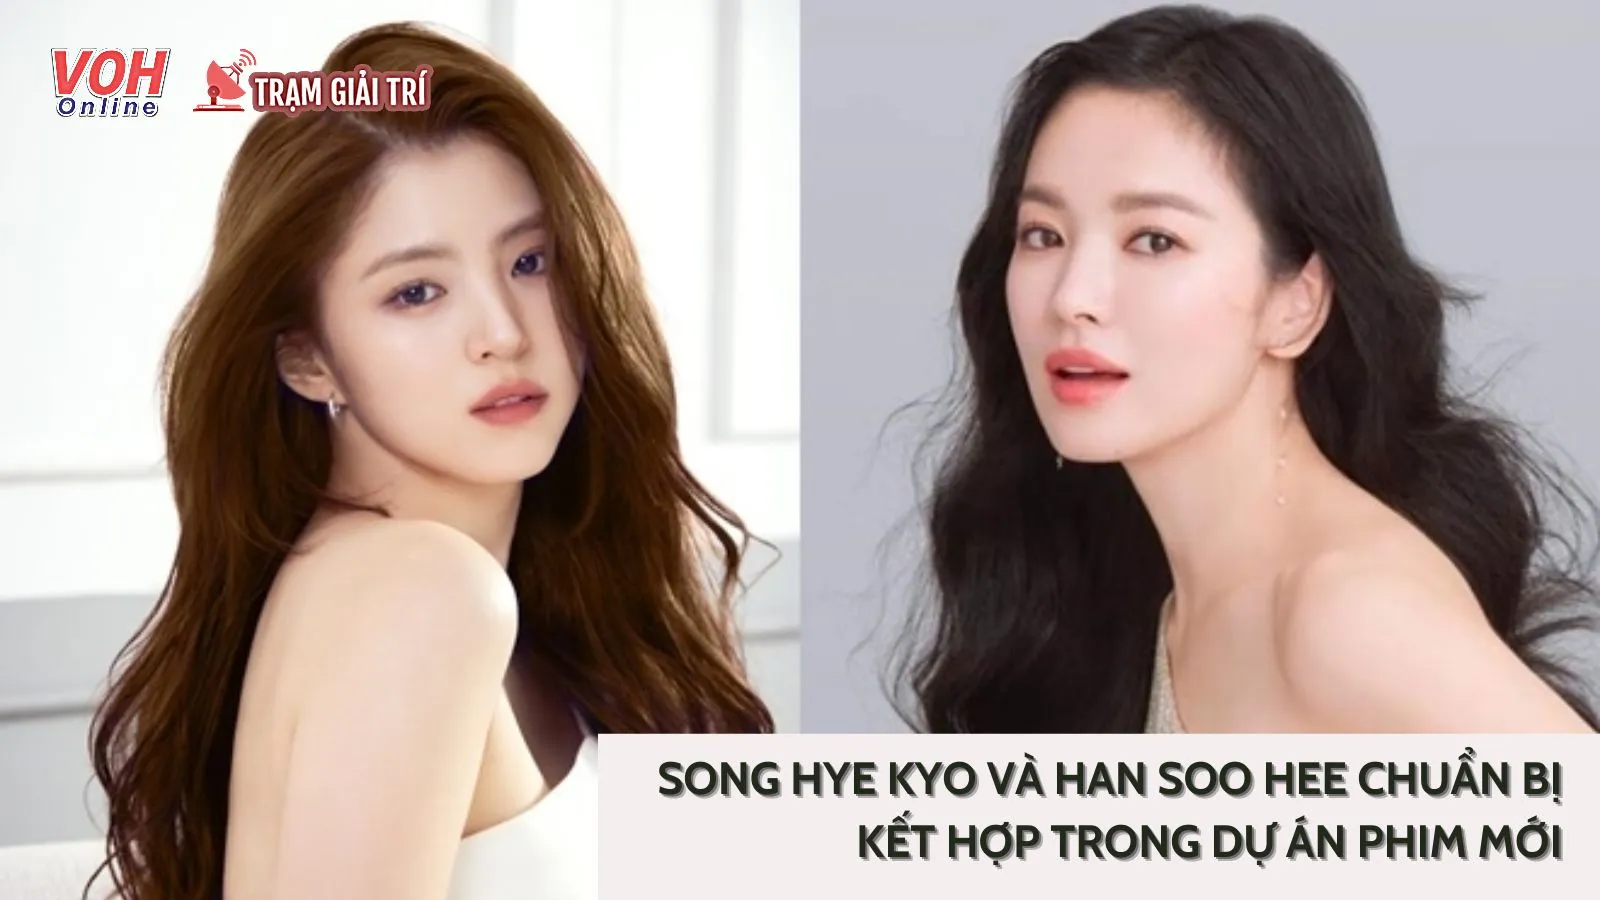 Gấp đôi visual: Song Hye Kyo và Han So Hee sẽ kết hợp trong dự án phim mới